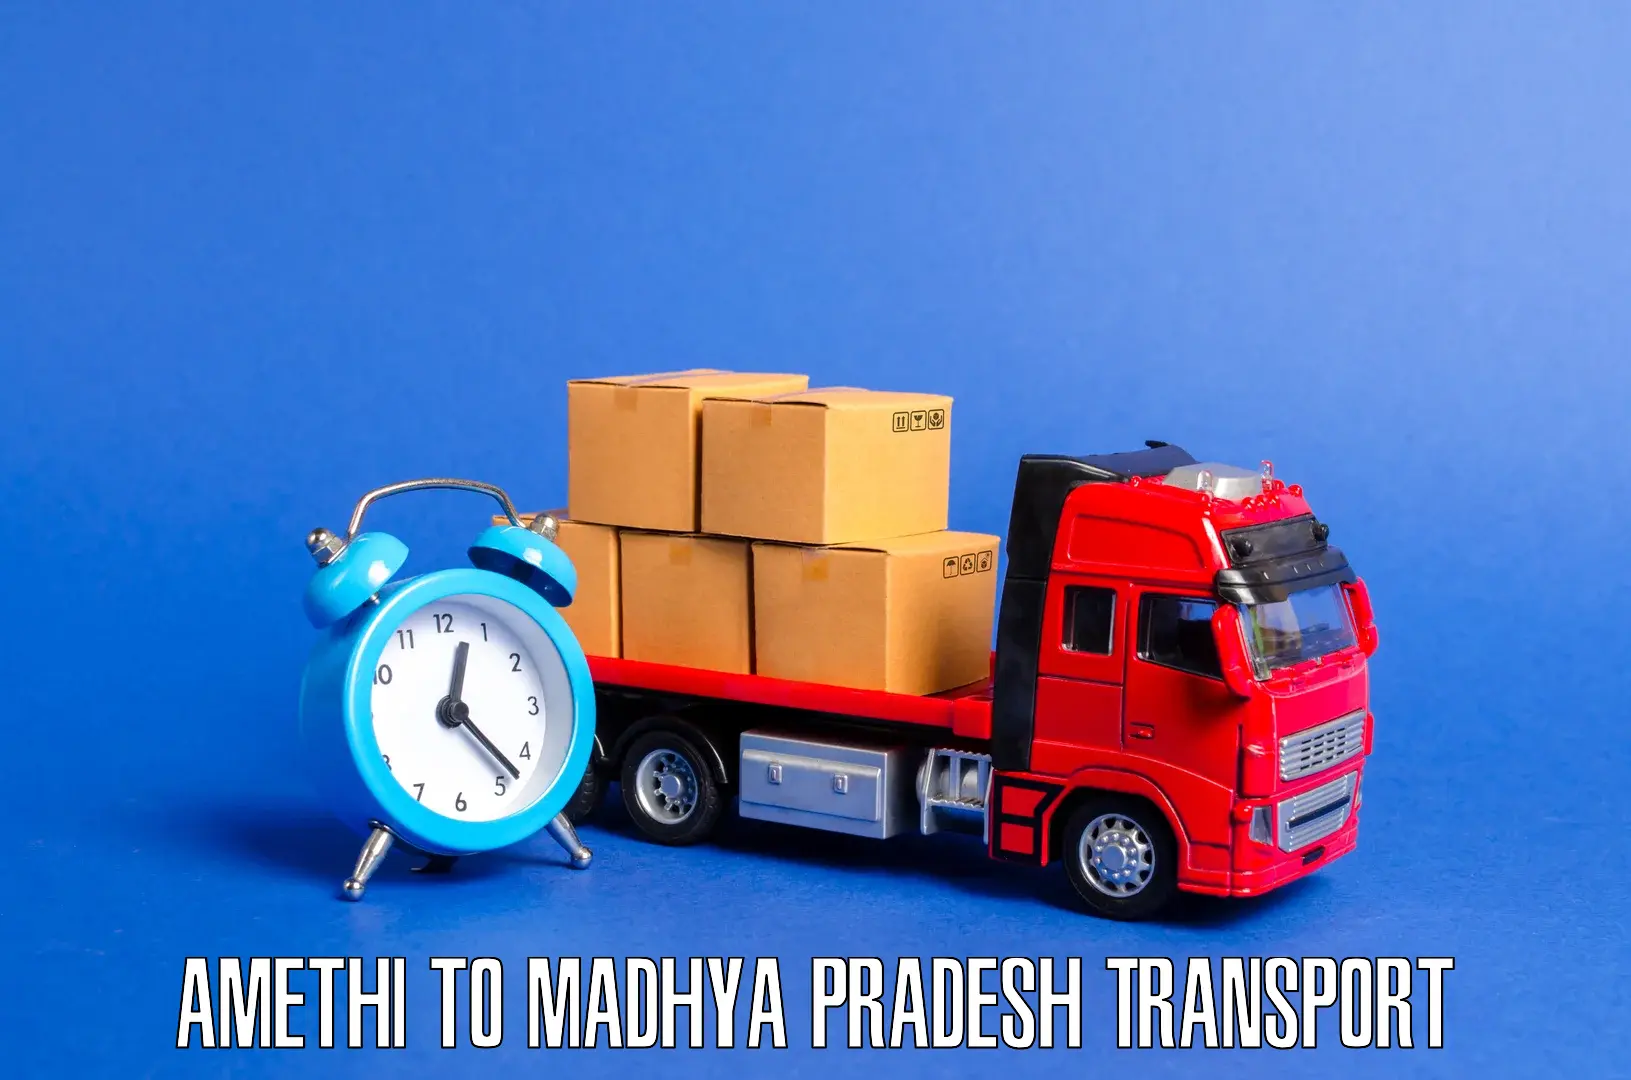 Online transport service Amethi to Raipur Karchuliyan